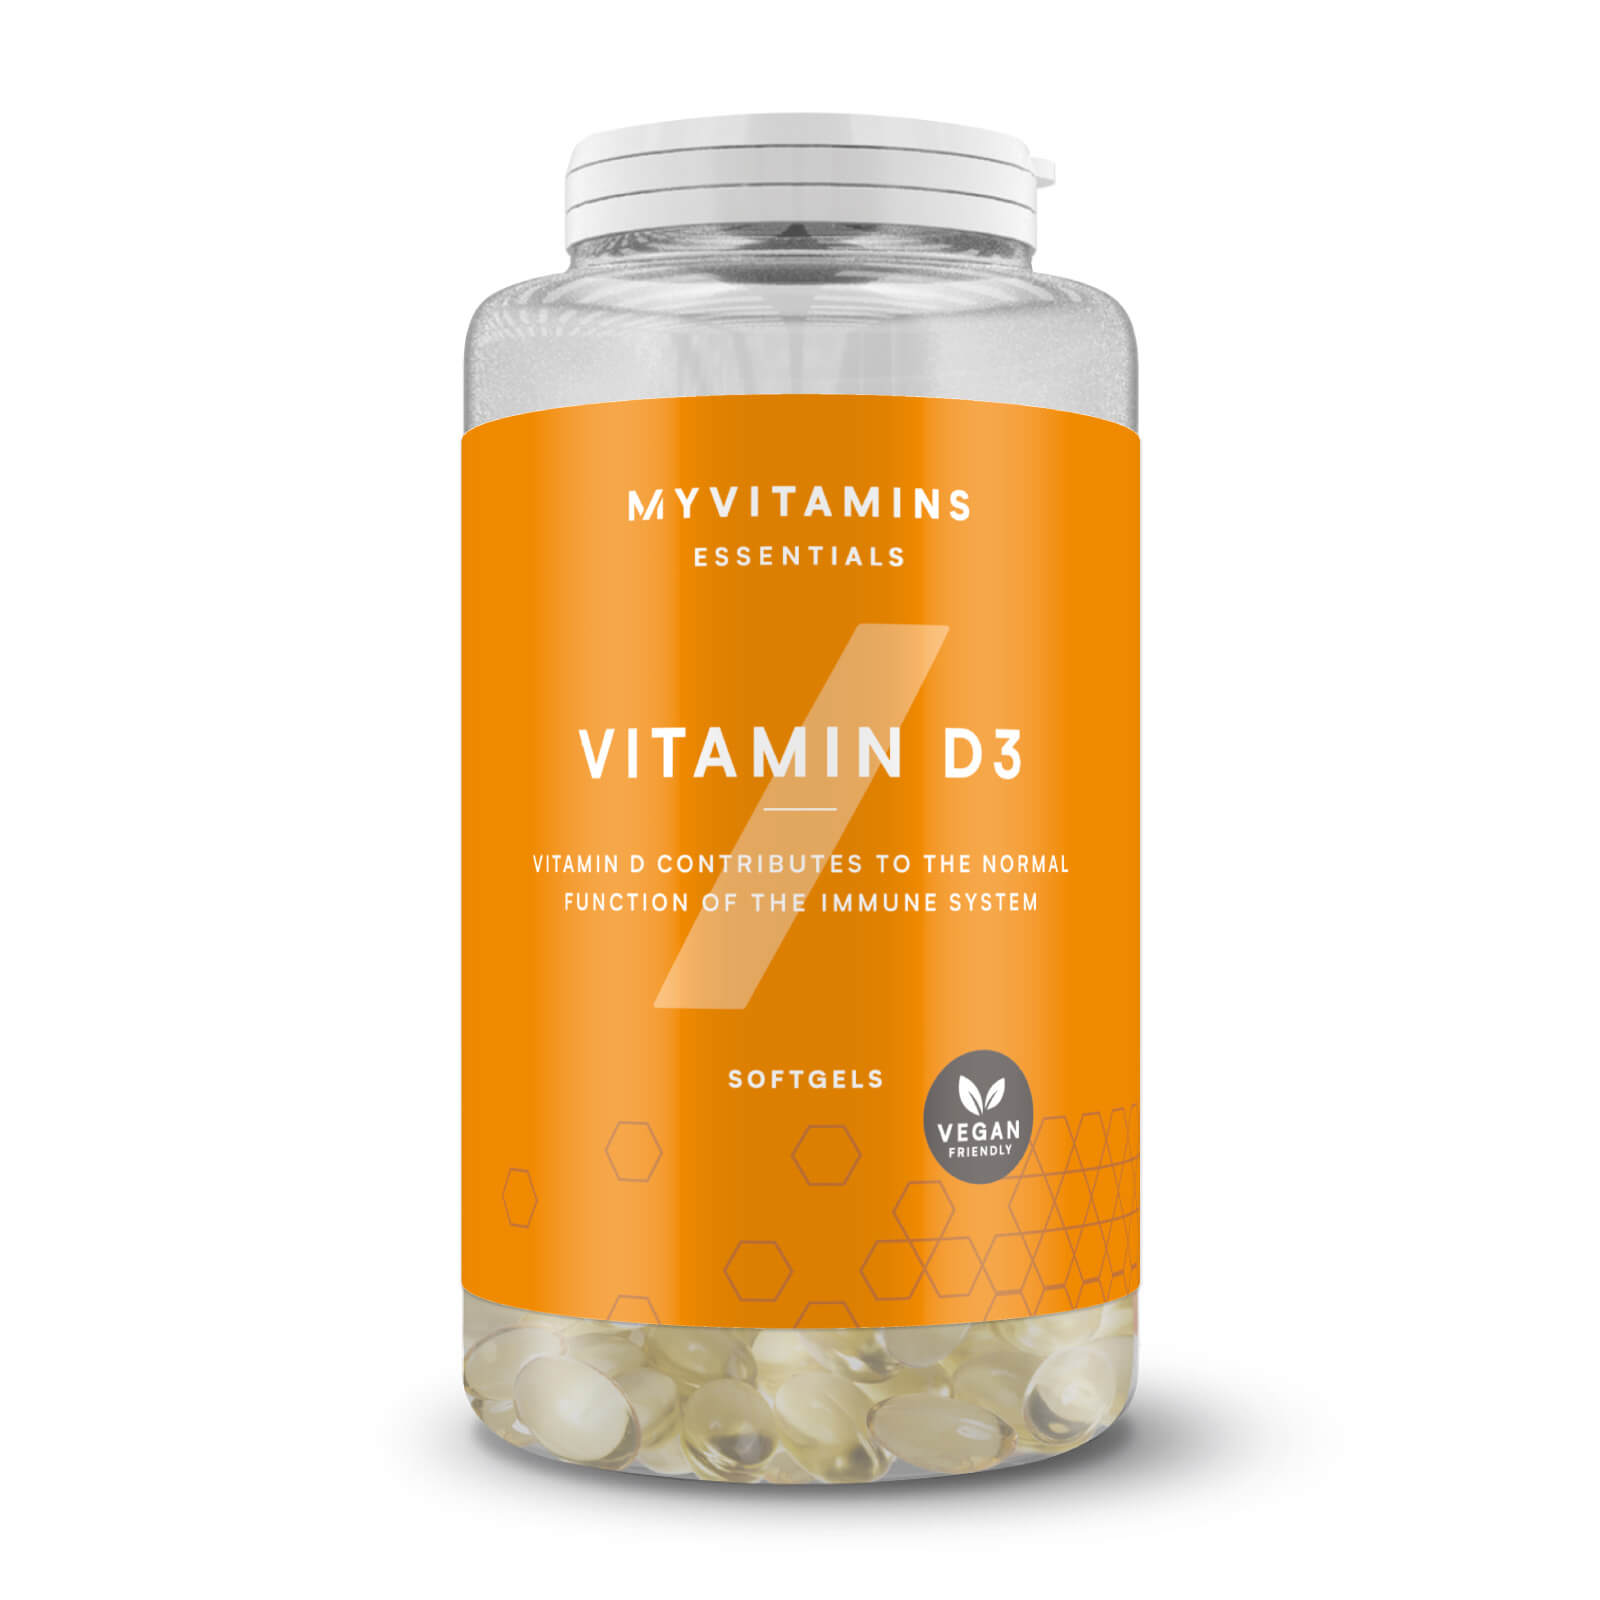 Myvitamins Vitamin D3 - 30softgels - Vegan